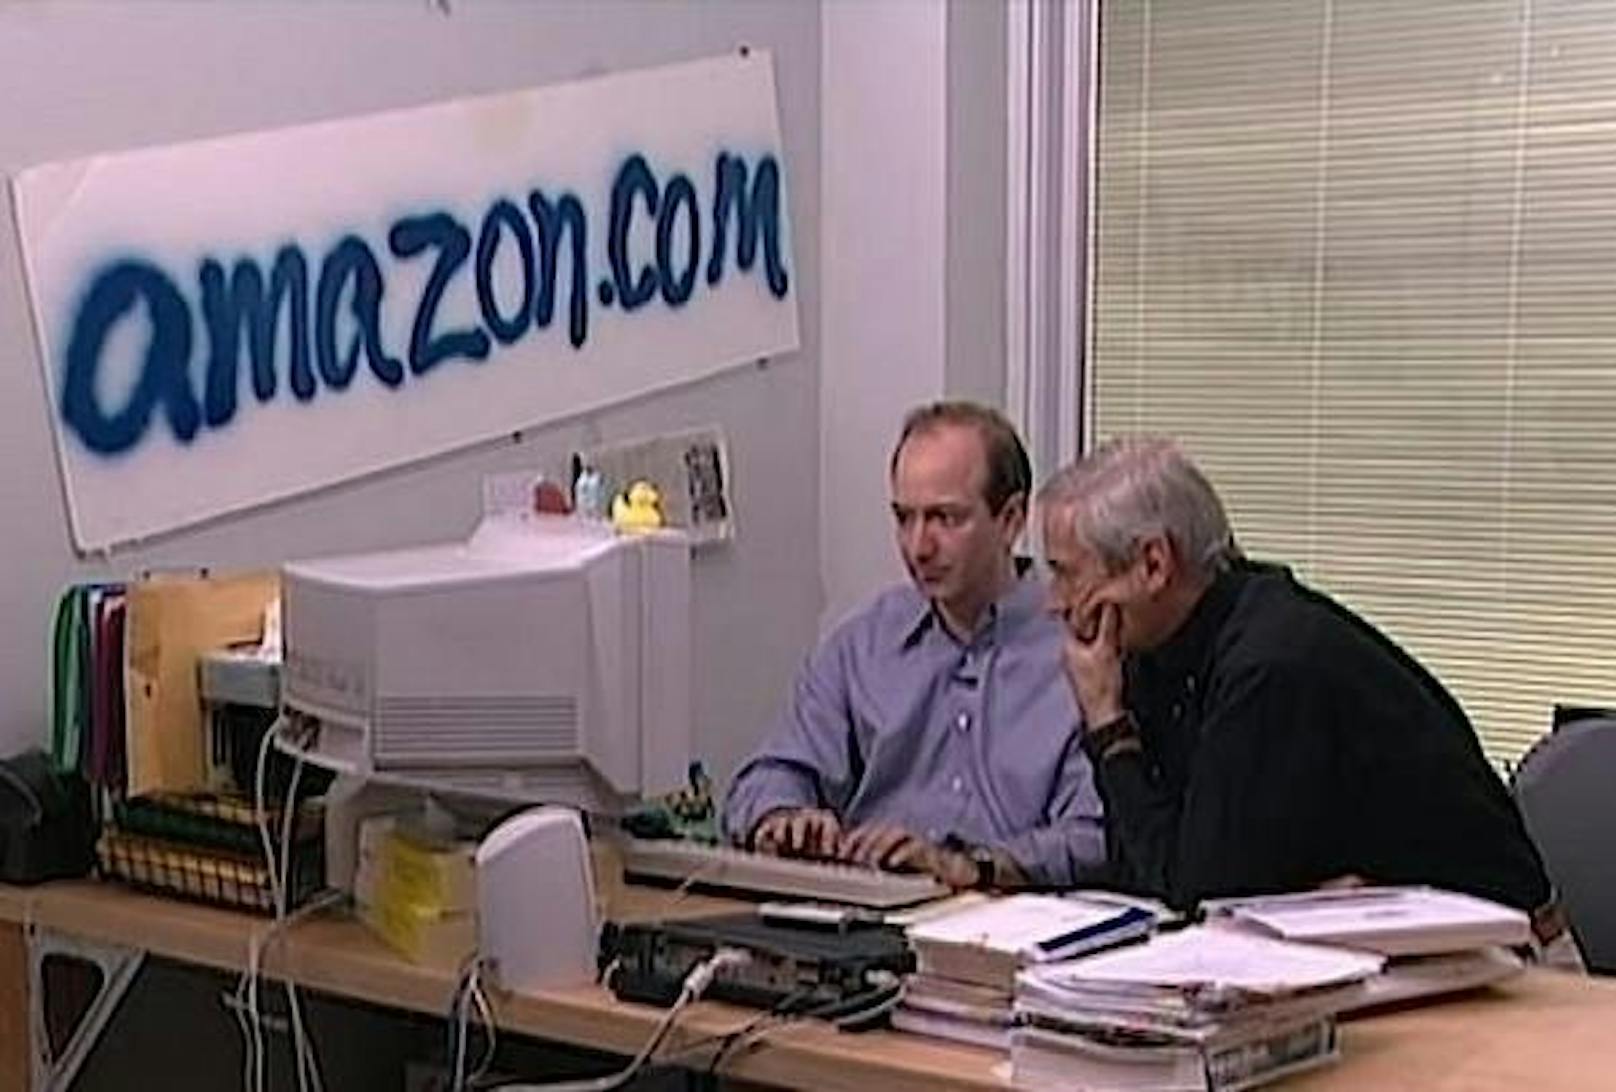 Der Amazon-Boss hat bescheiden angefangen. Heute sitzt er auf einem geschätzten Vermögen von rund 156 Milliarden US-Dollar.